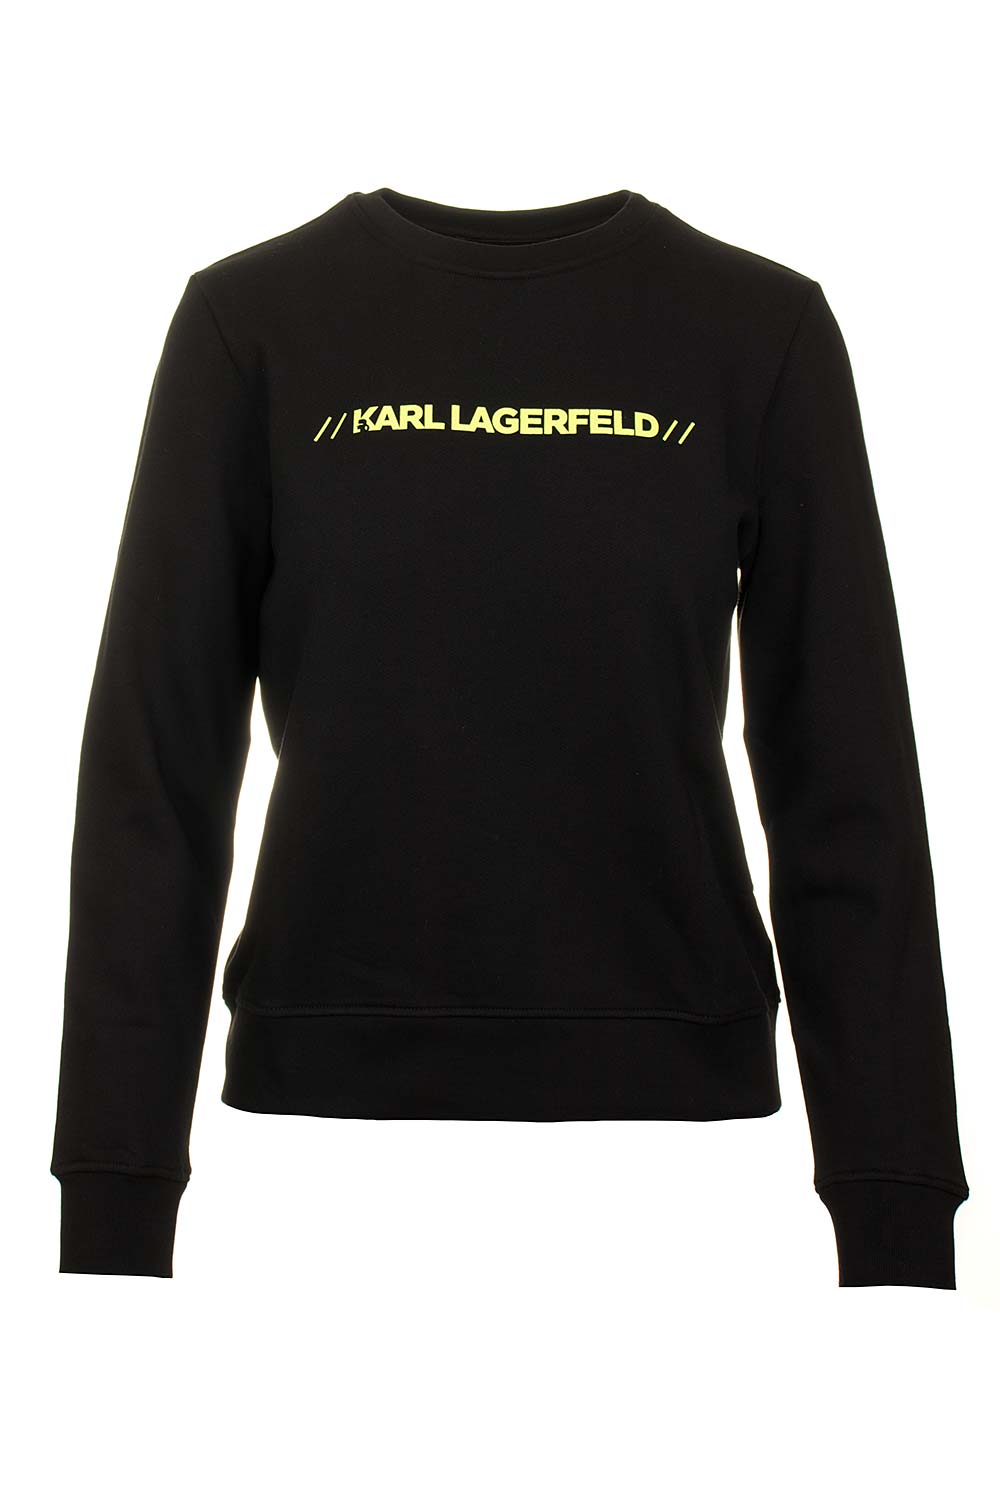 Karl Lagerfeld dámská mikina černá Velikost: M